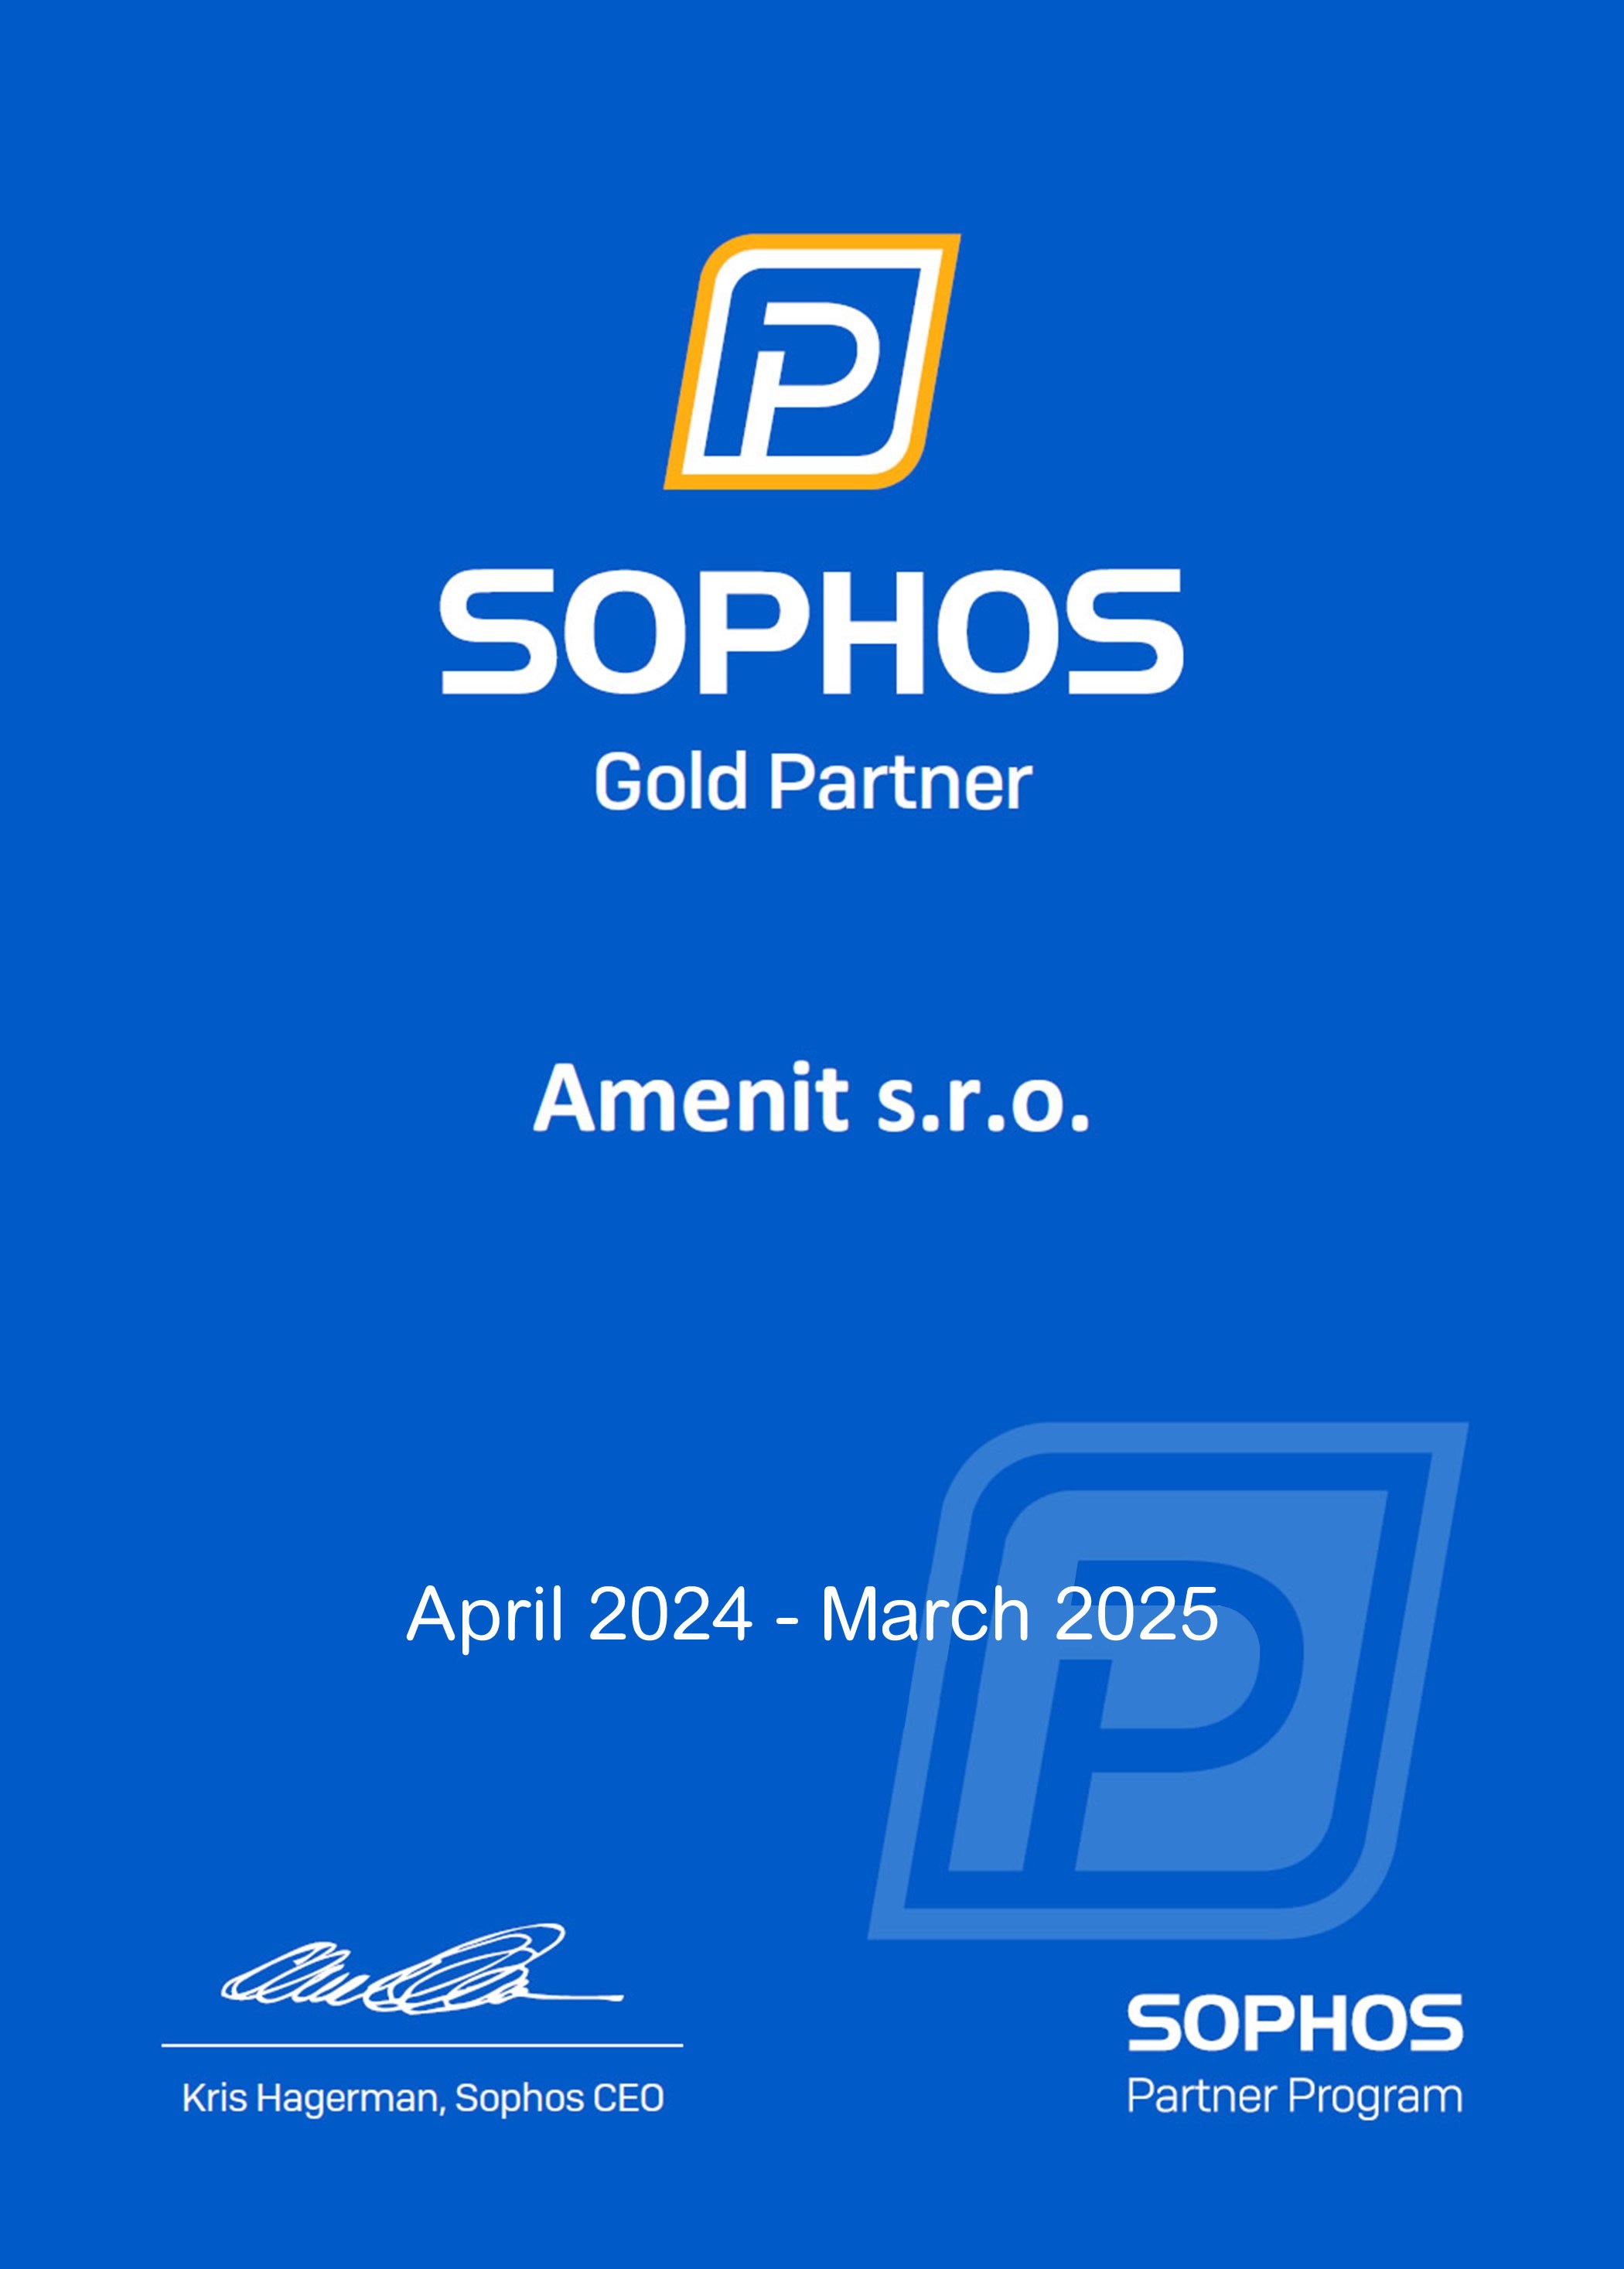 SOPHOS Gold Partner 2024 - 2025